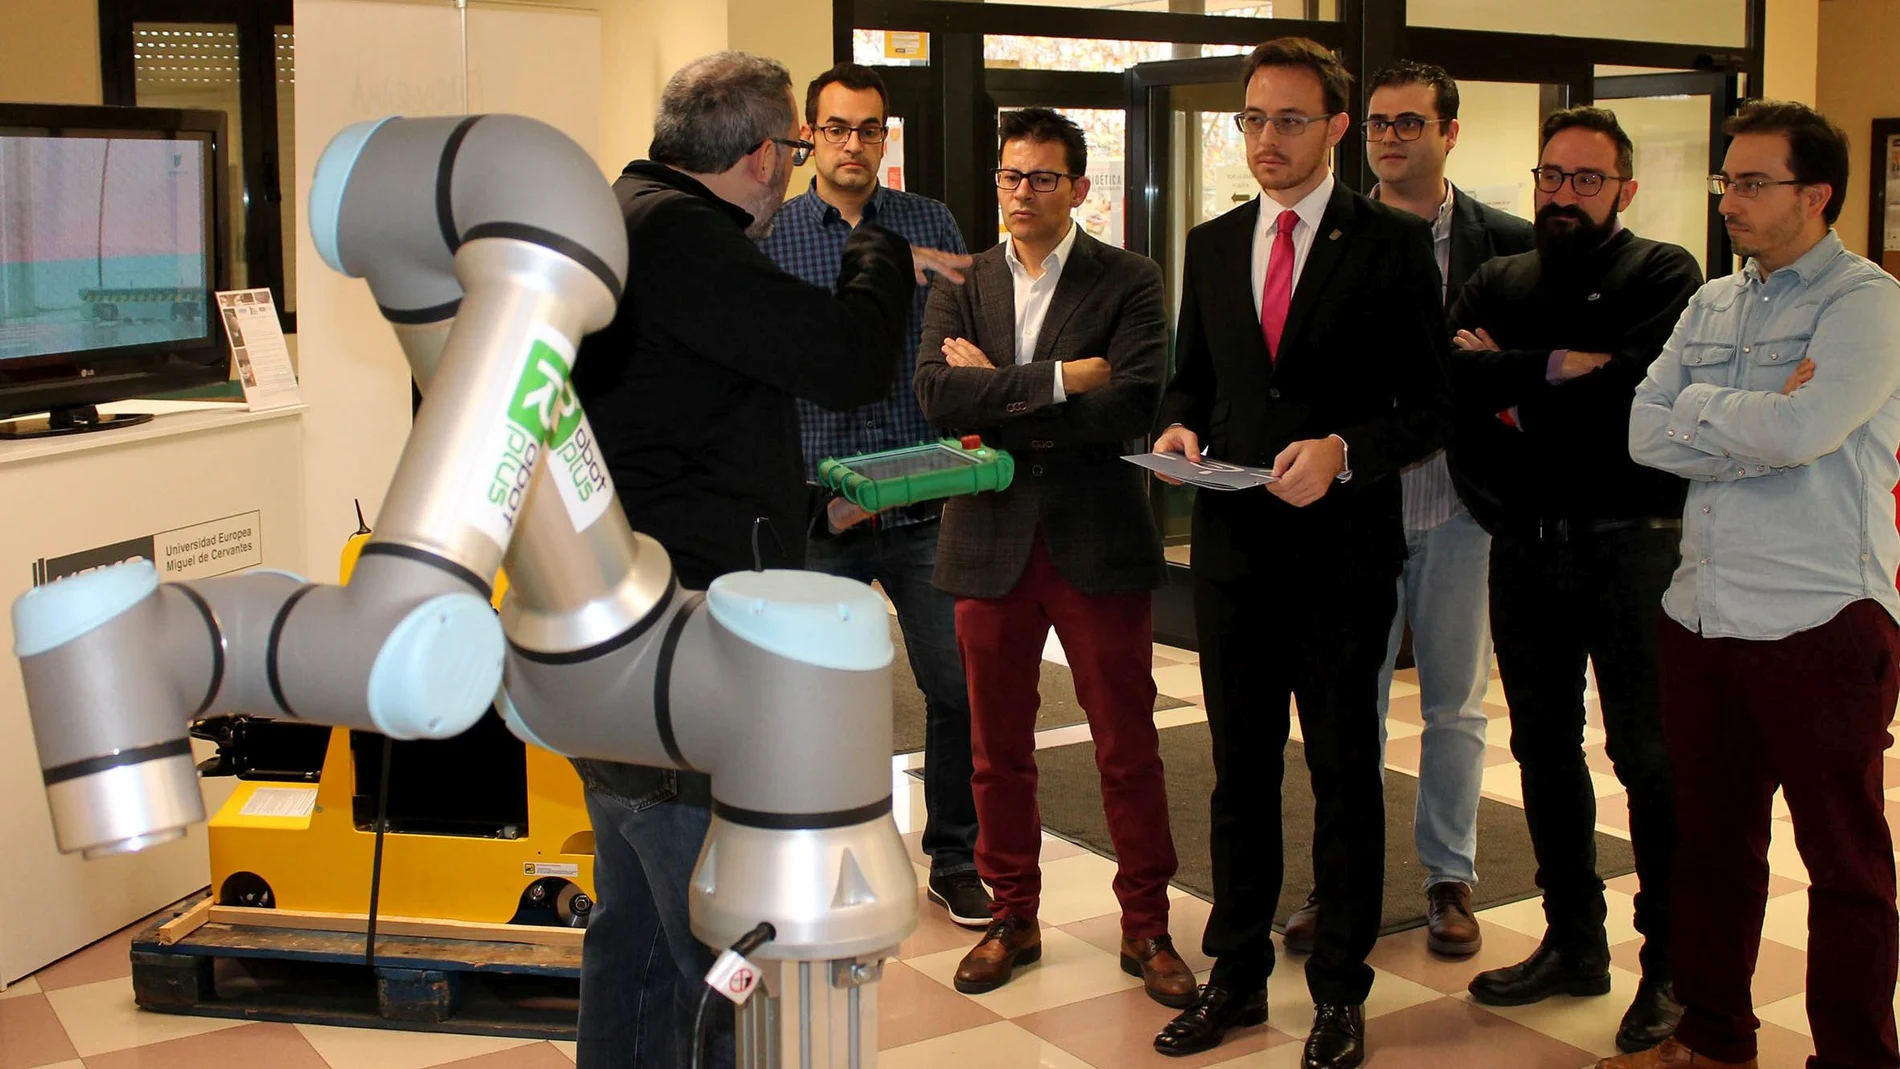 Alejandro Santos Lozano, Vicerrector de Internacionalización, Cultura Científica y Transferencia de la UEMC, junto a los ponentes de la jornada, en una de las zonas de exhibición de robots y AGVs expuestas en la Universidad Europea Miguel de Cervantes.